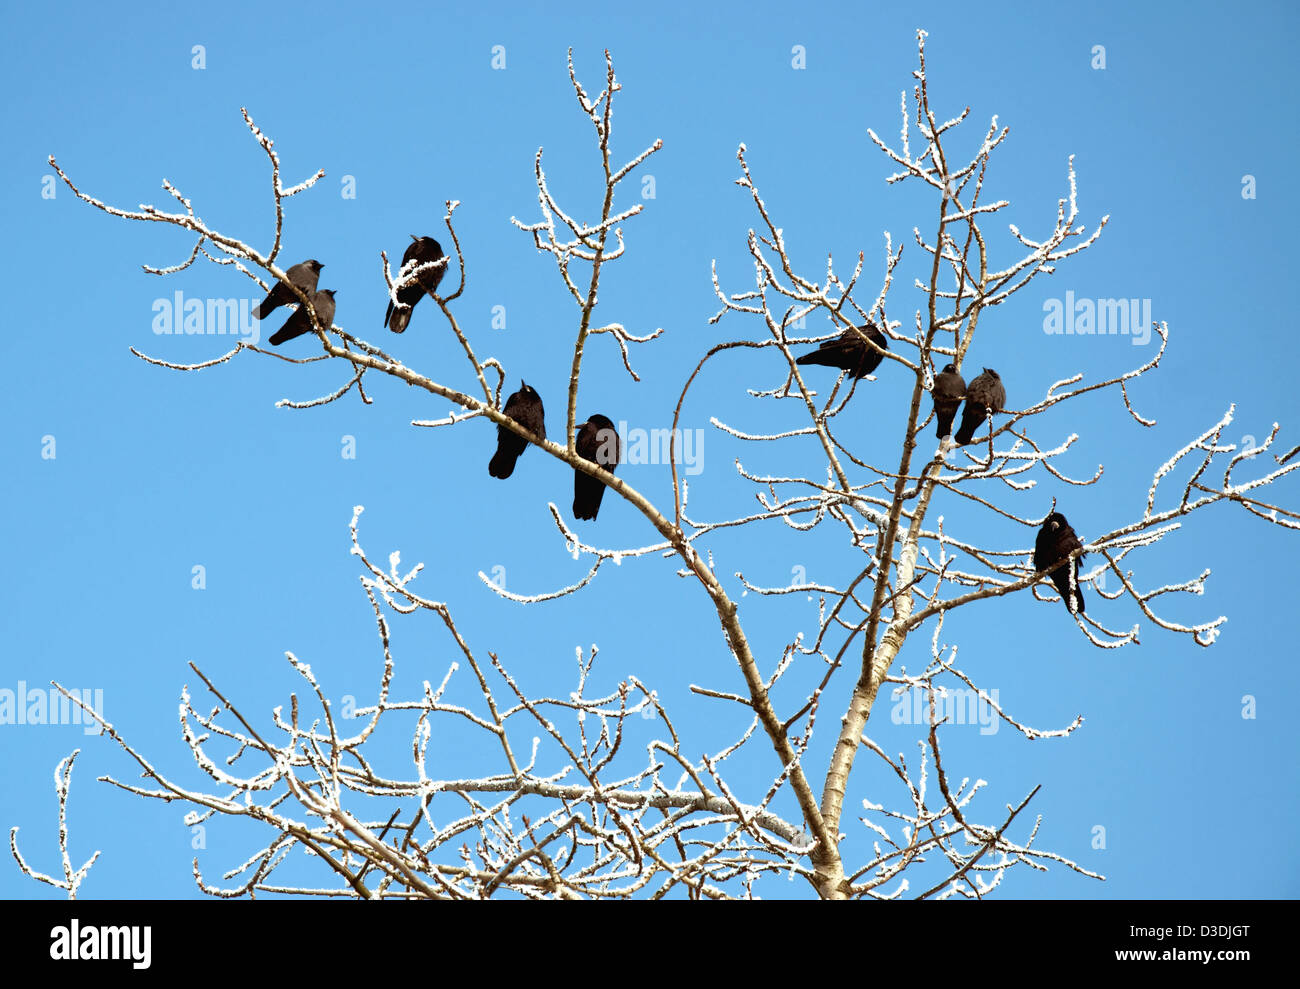 Rooks en árbol en ramas con nieve sobre cielo azul Foto de stock